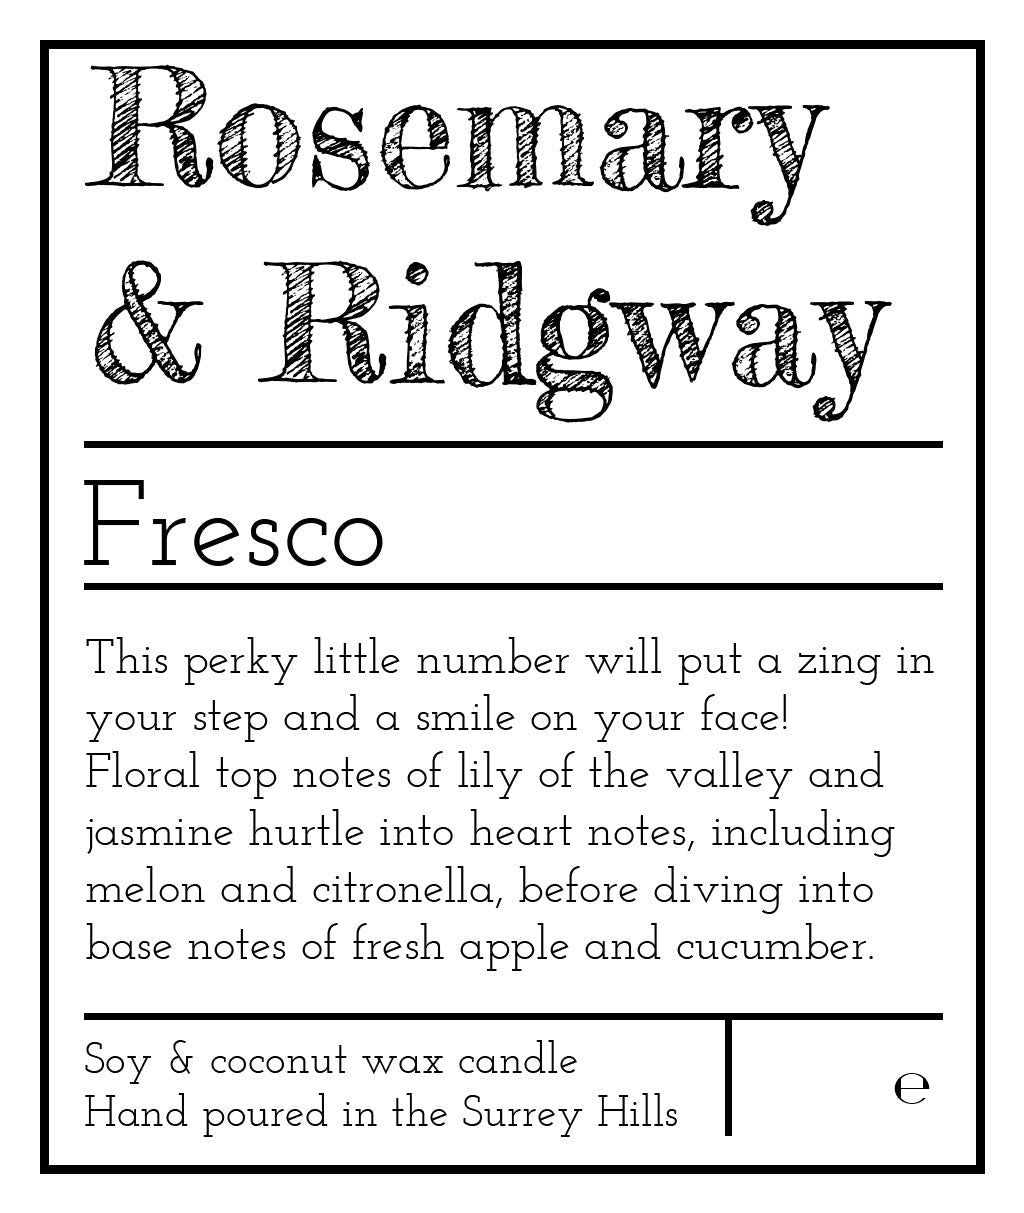 Fresco Rosemary & Ridgway